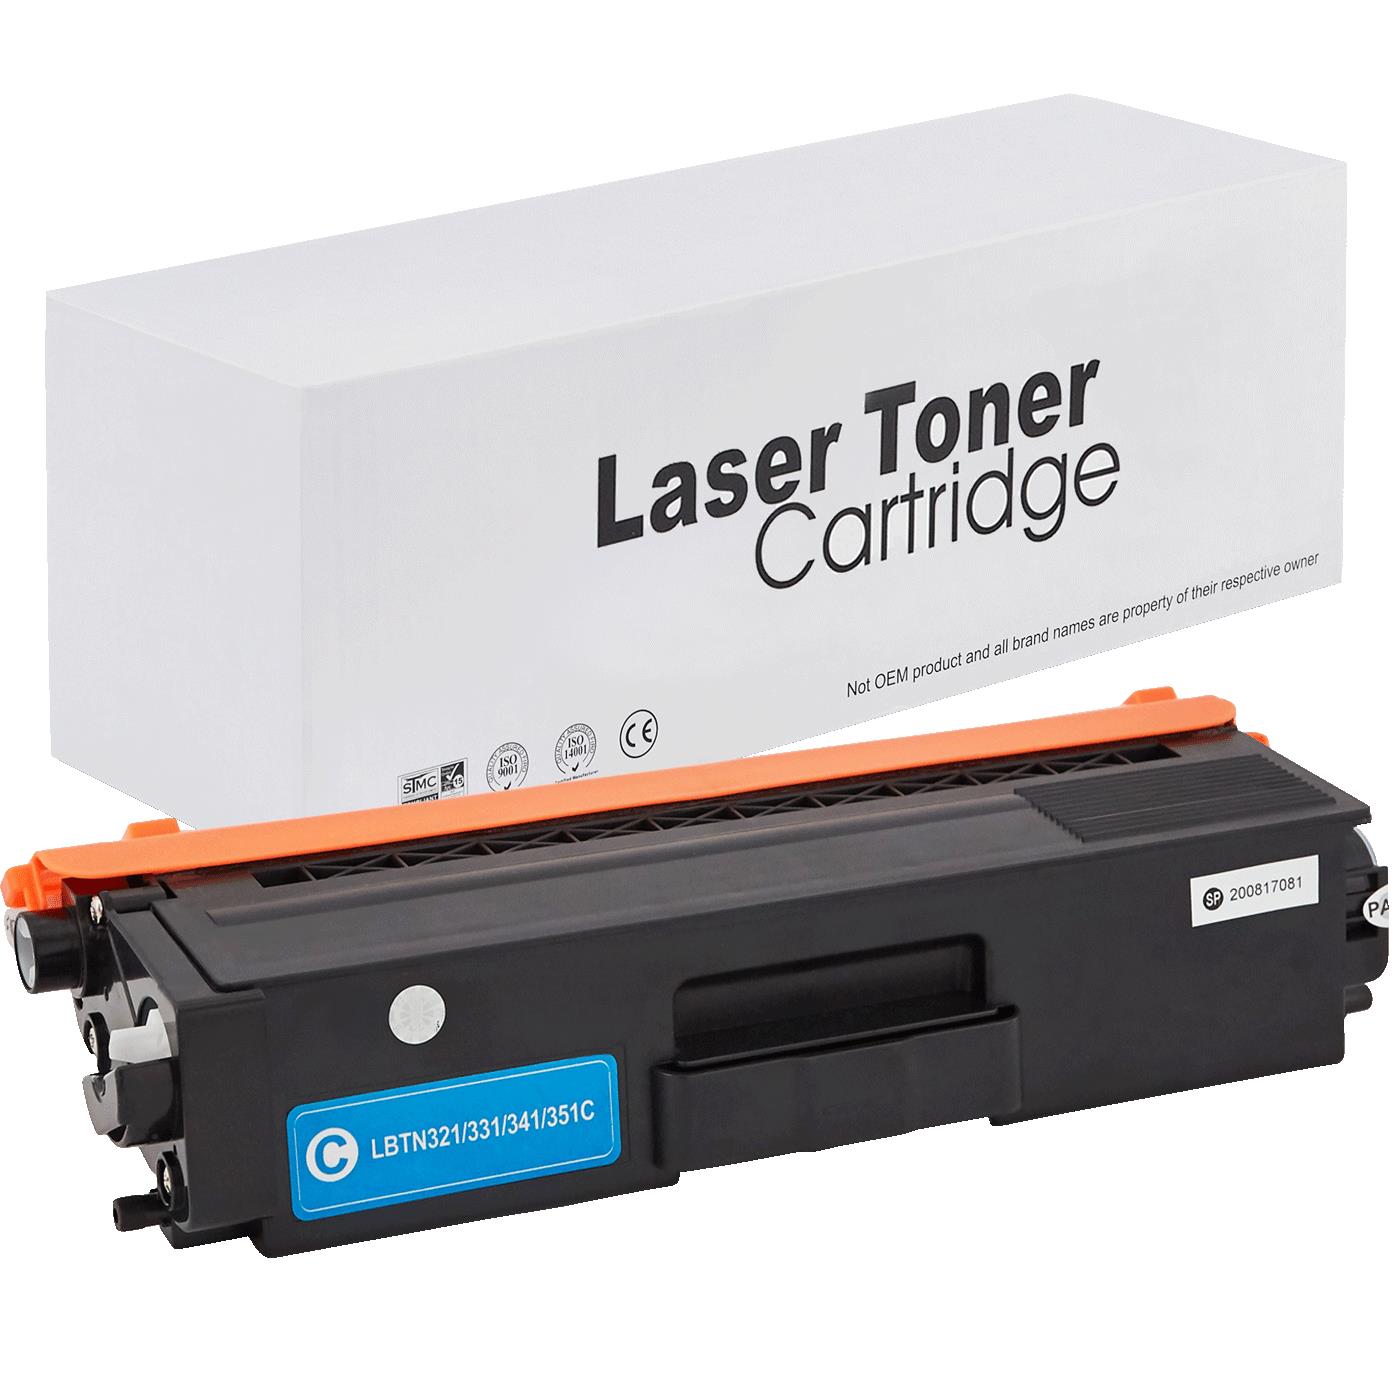 съвместима тонер касета за принтери и печатащи устройства на Brother HL-L 8250 CDN Toner BR-321C | TN321C. Ниски цени, прецизно изпълнение, високо качество.